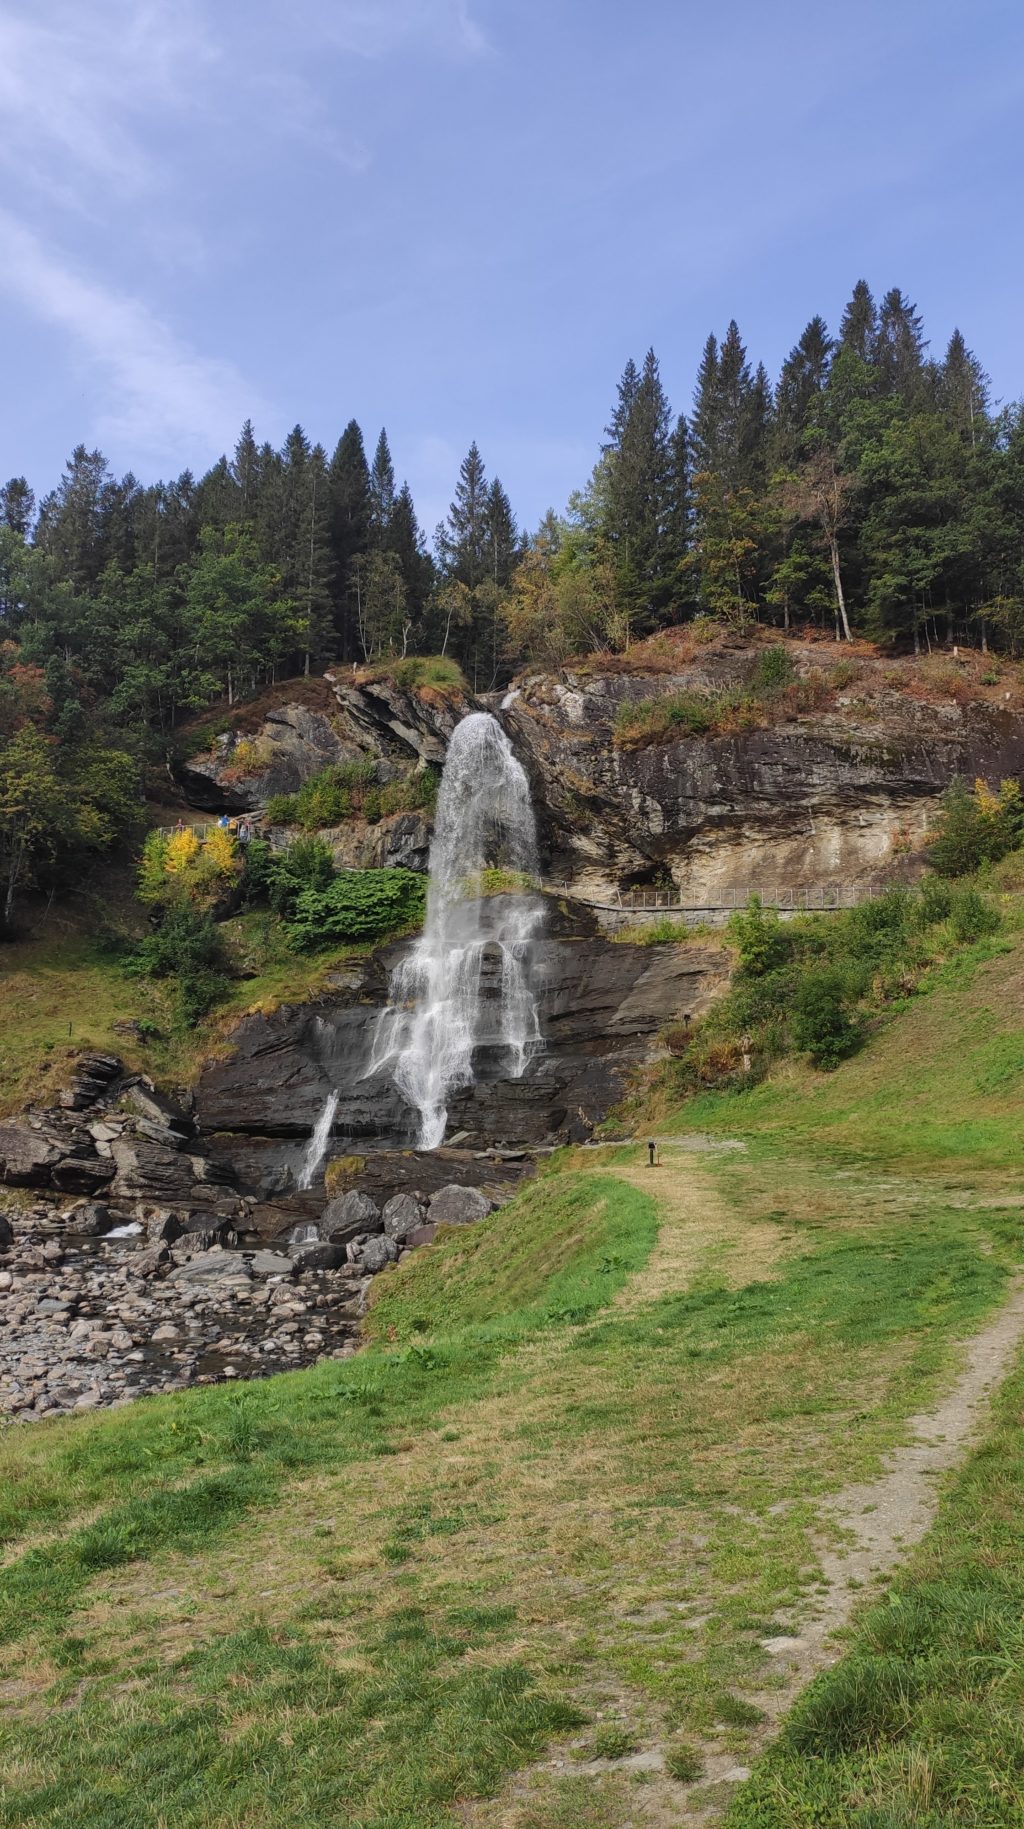 Steinsdalsfossen: Ein Fußweg führt unter dem Wasserfall entlang zu einer kleinen Aussichtsolattform